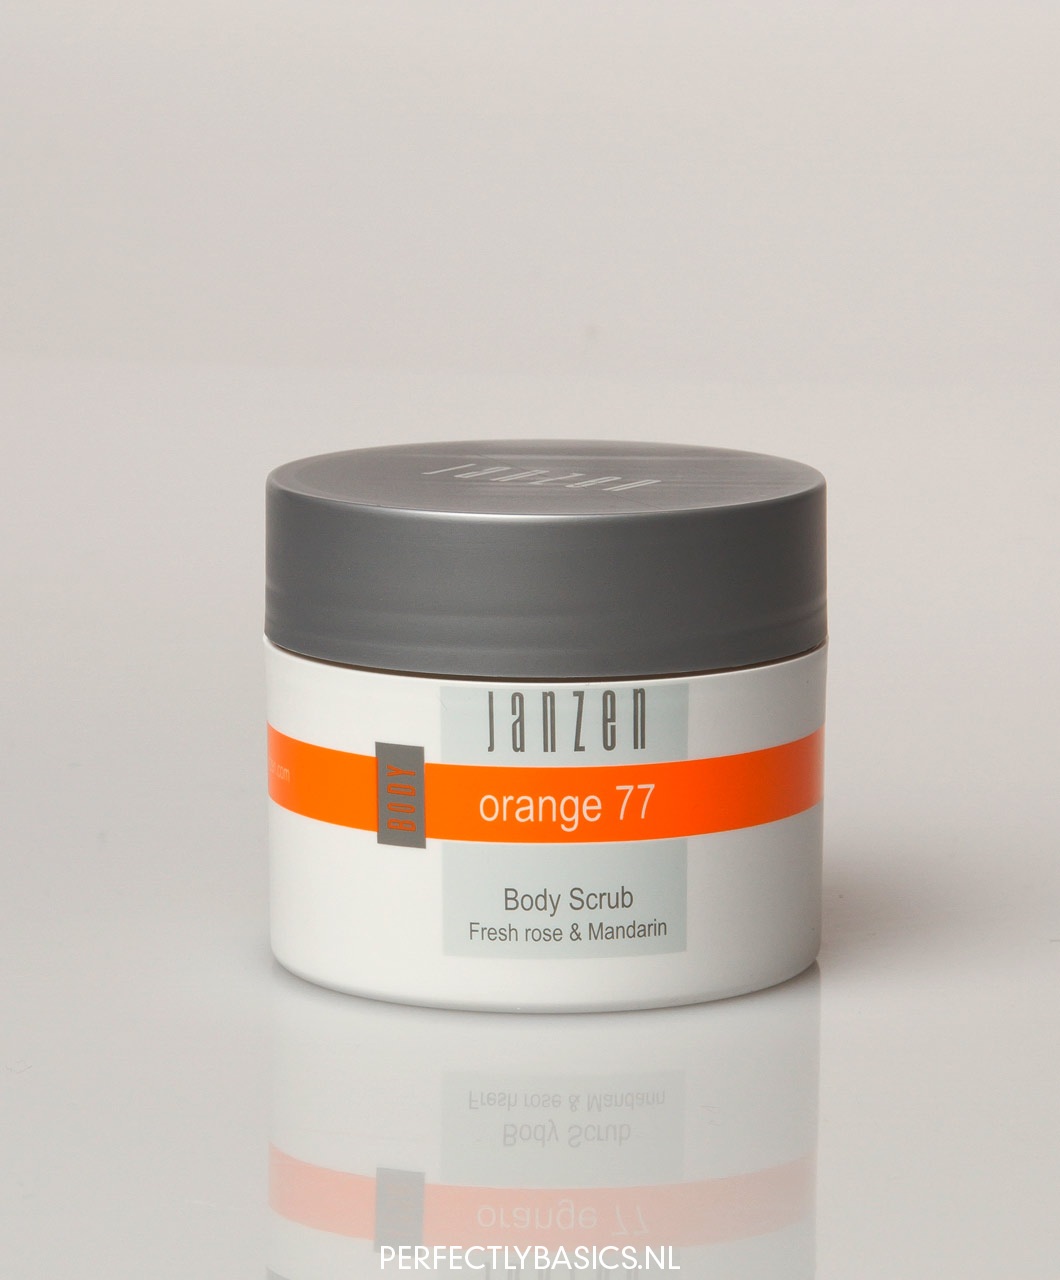 JANZEN Body Scrub - Orange 77 Roos & Mandarijn